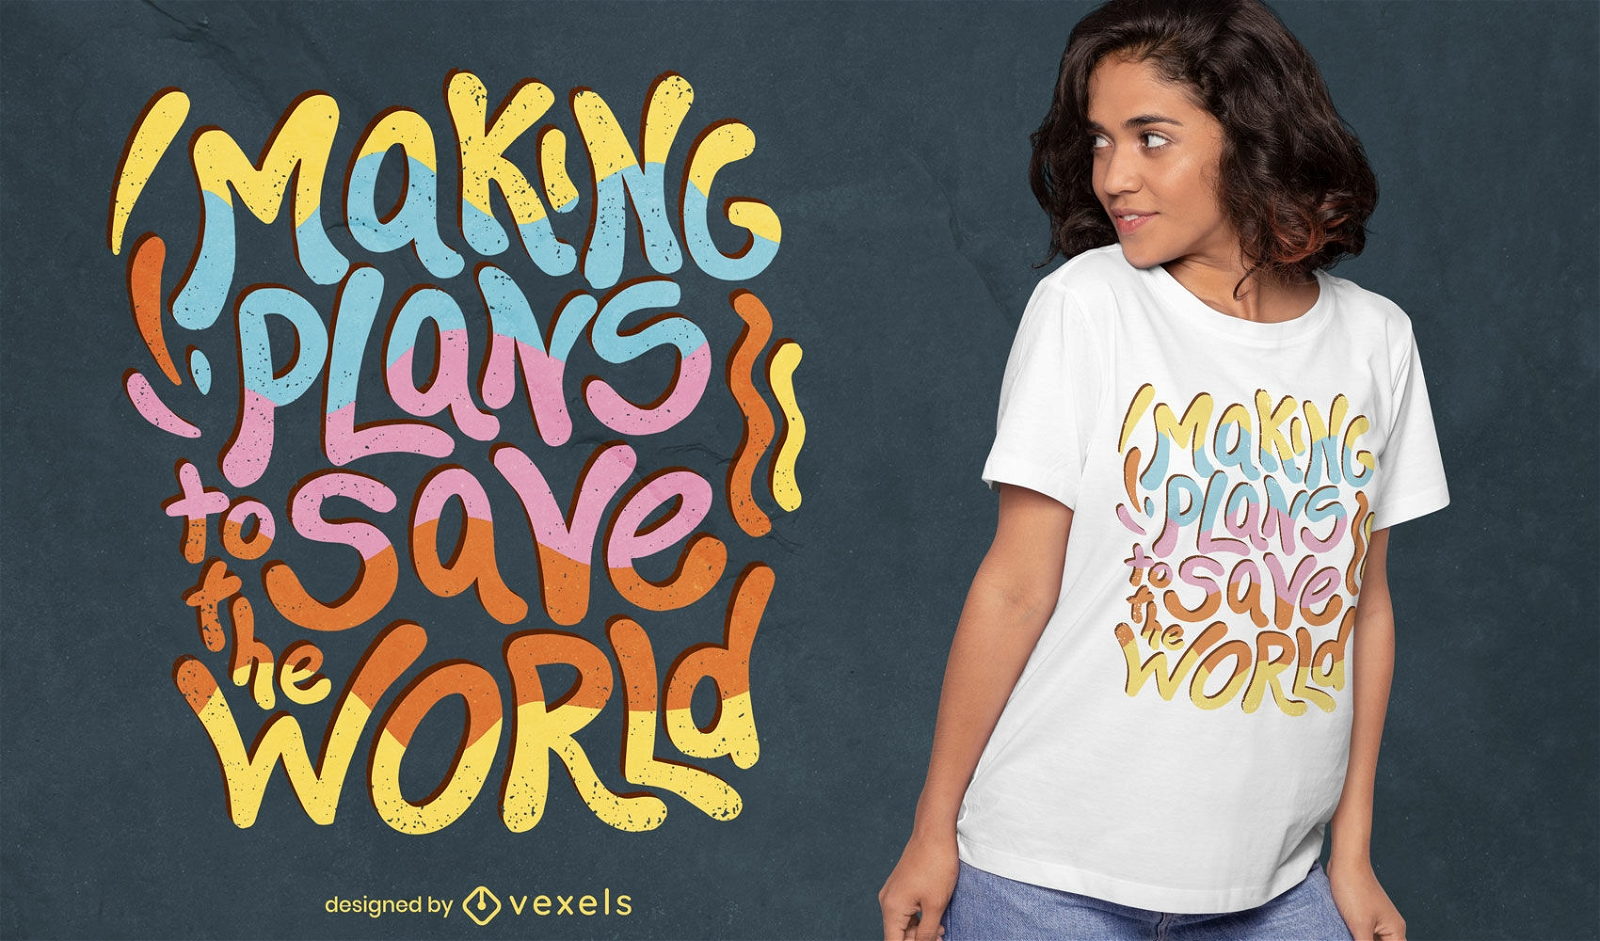 Speichern Sie die Welt, die T-Shirt-Design beschriftet